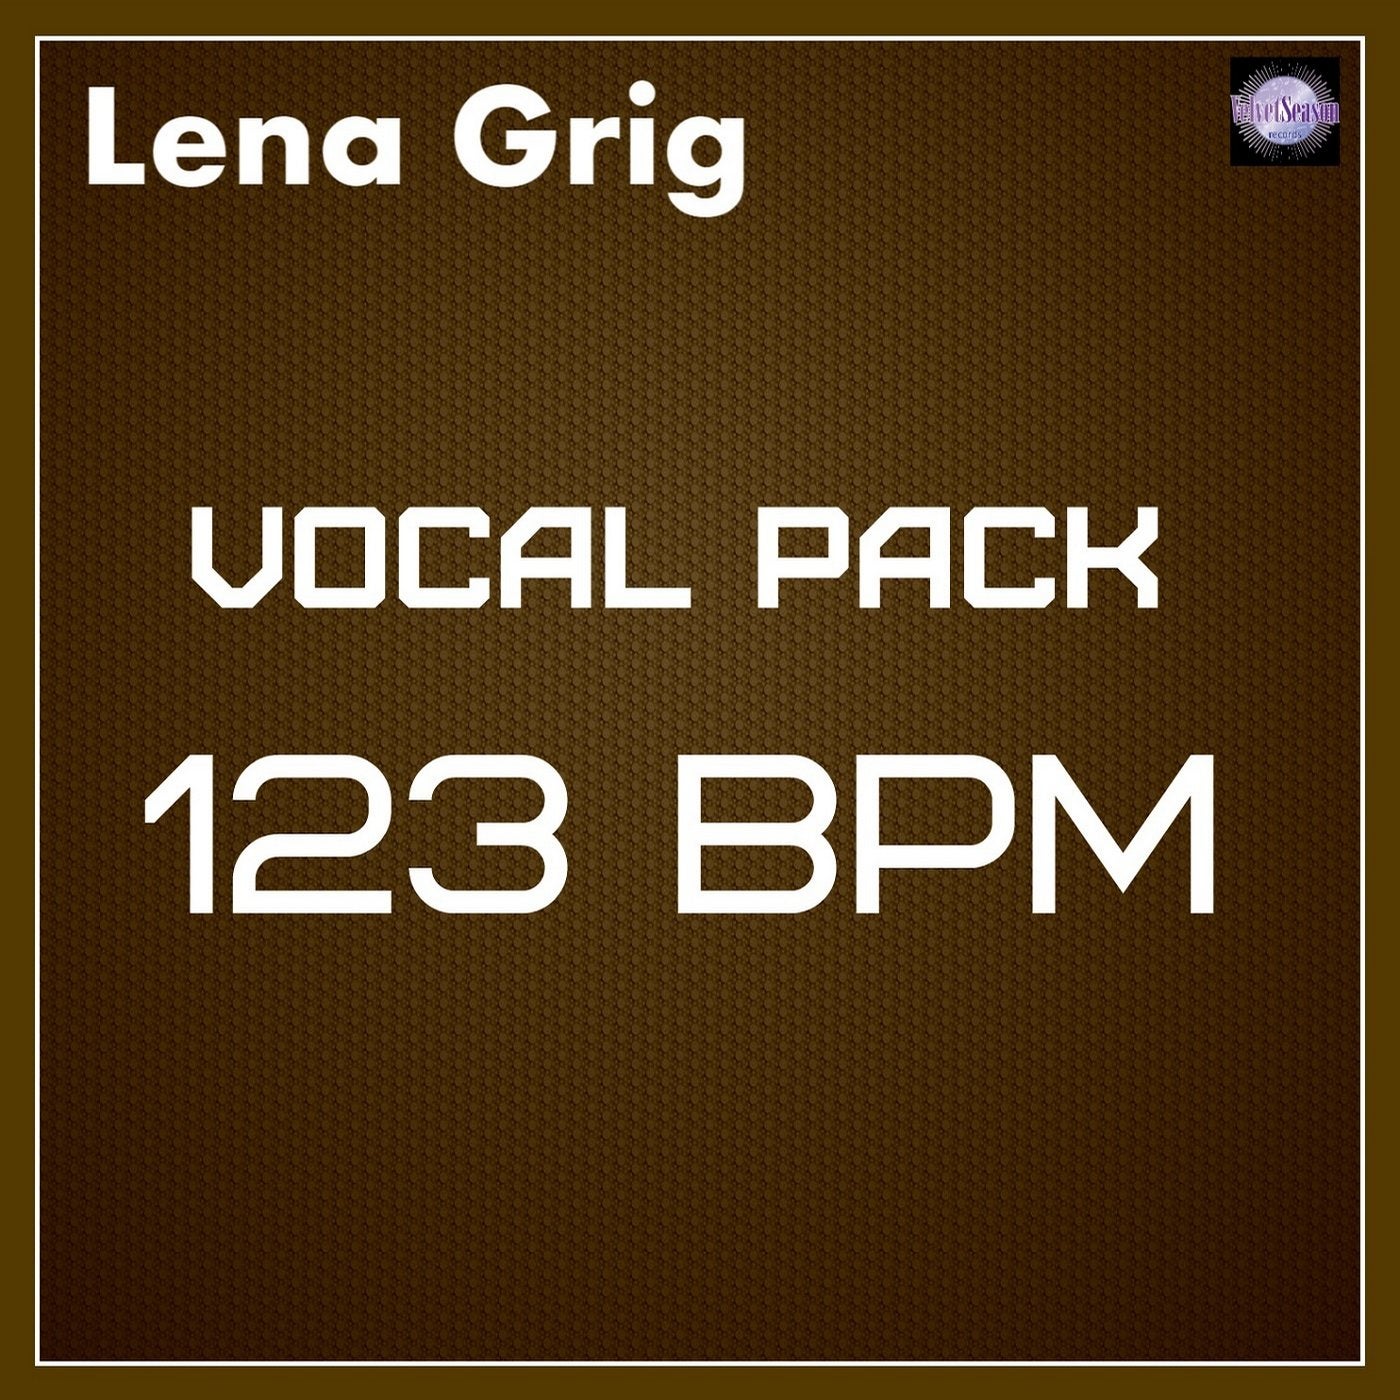 Vocal Pack 123 BPM